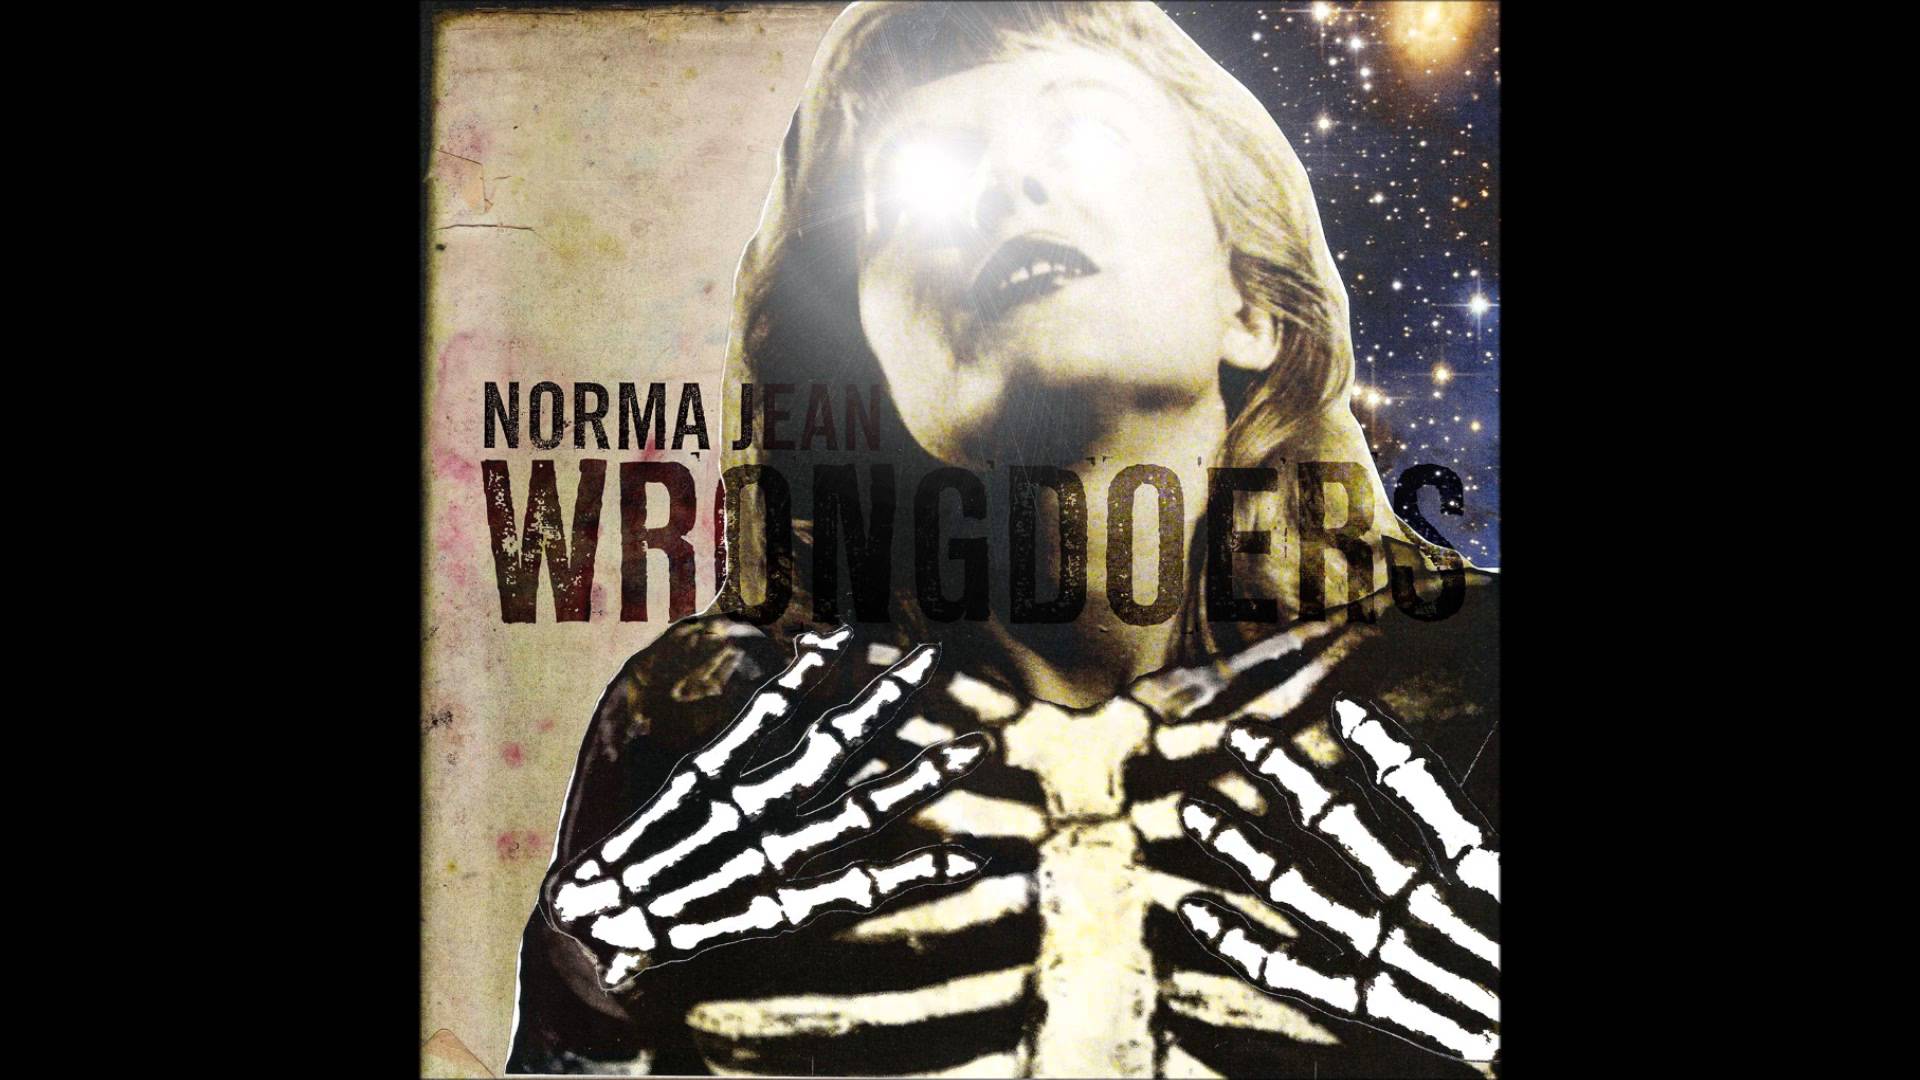 Norma Jean (Full Album)